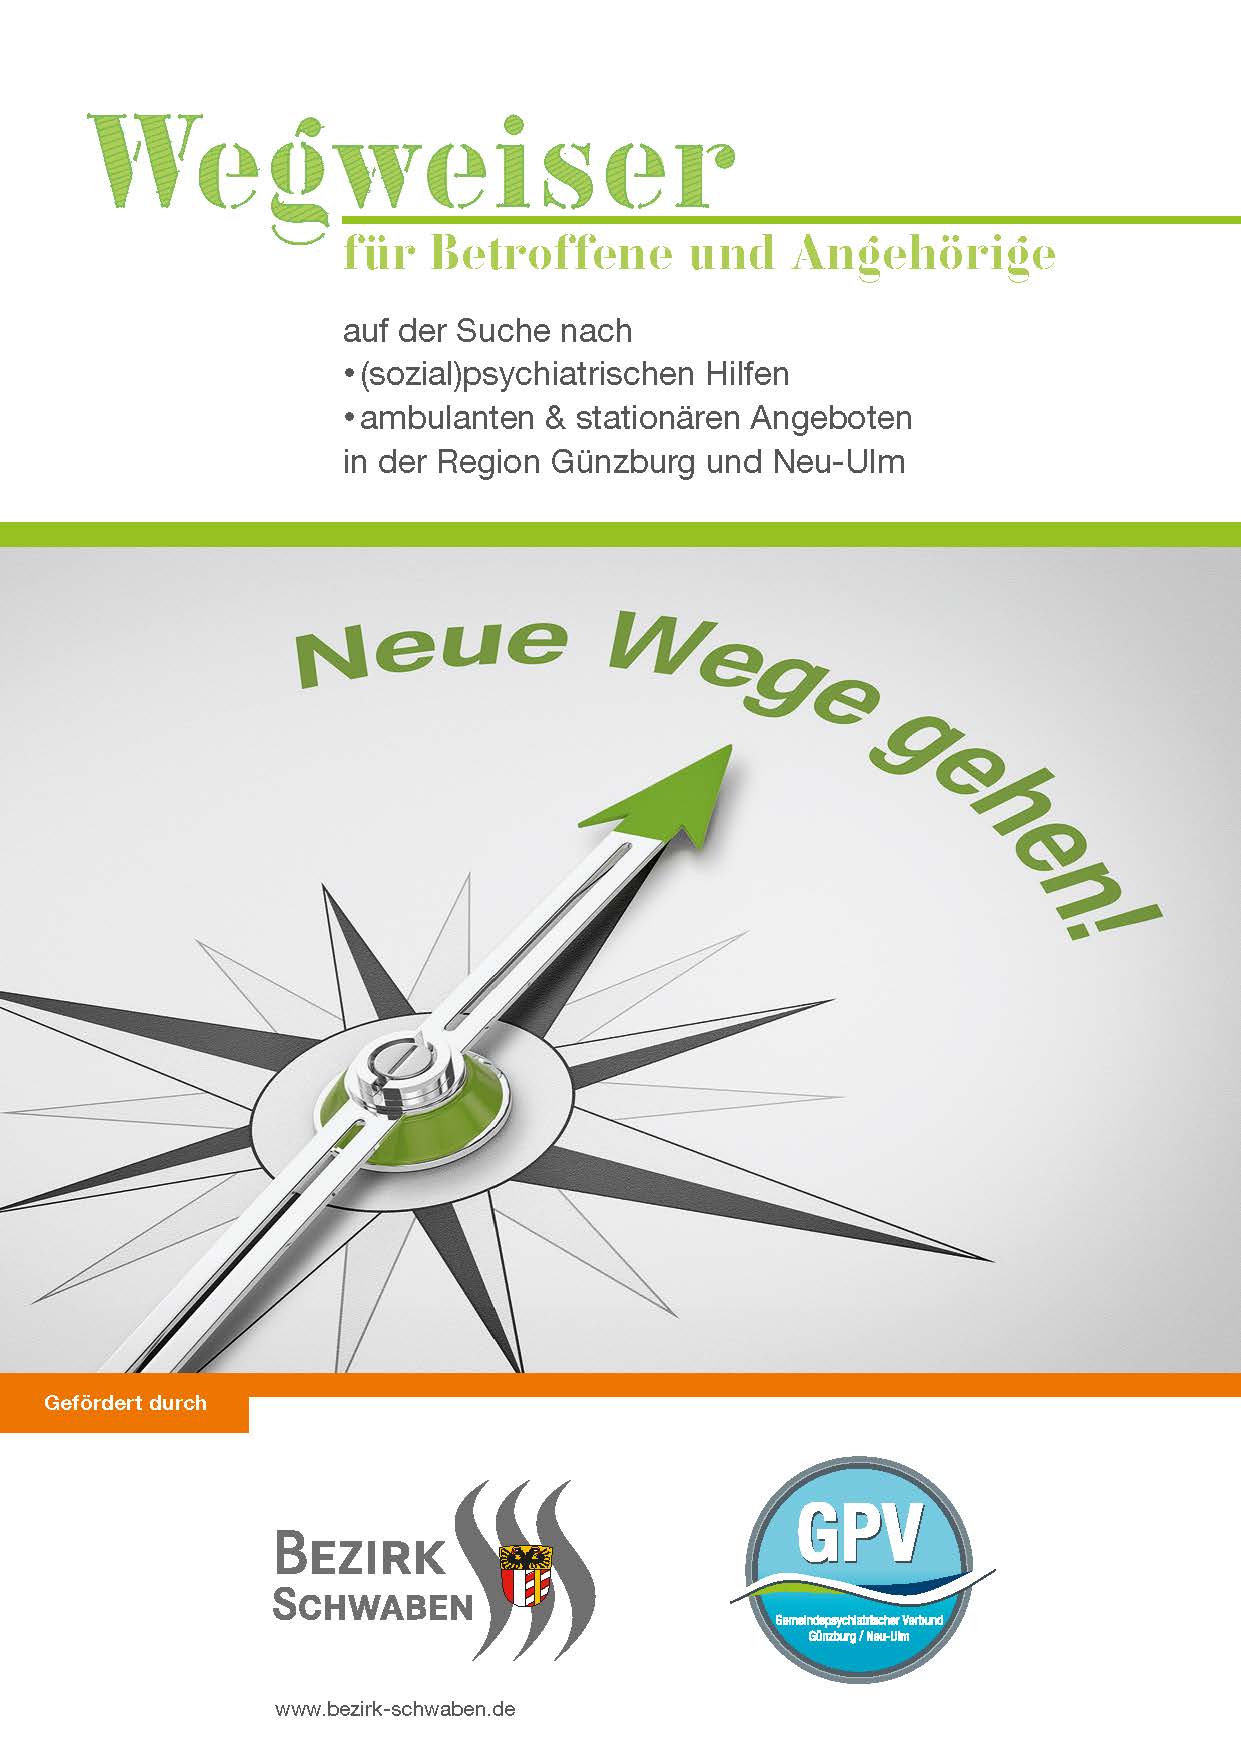 Titelbild zum Wegweiser für Betroffene und Angehörige in der Region Günzburg und Neu-Ulm.